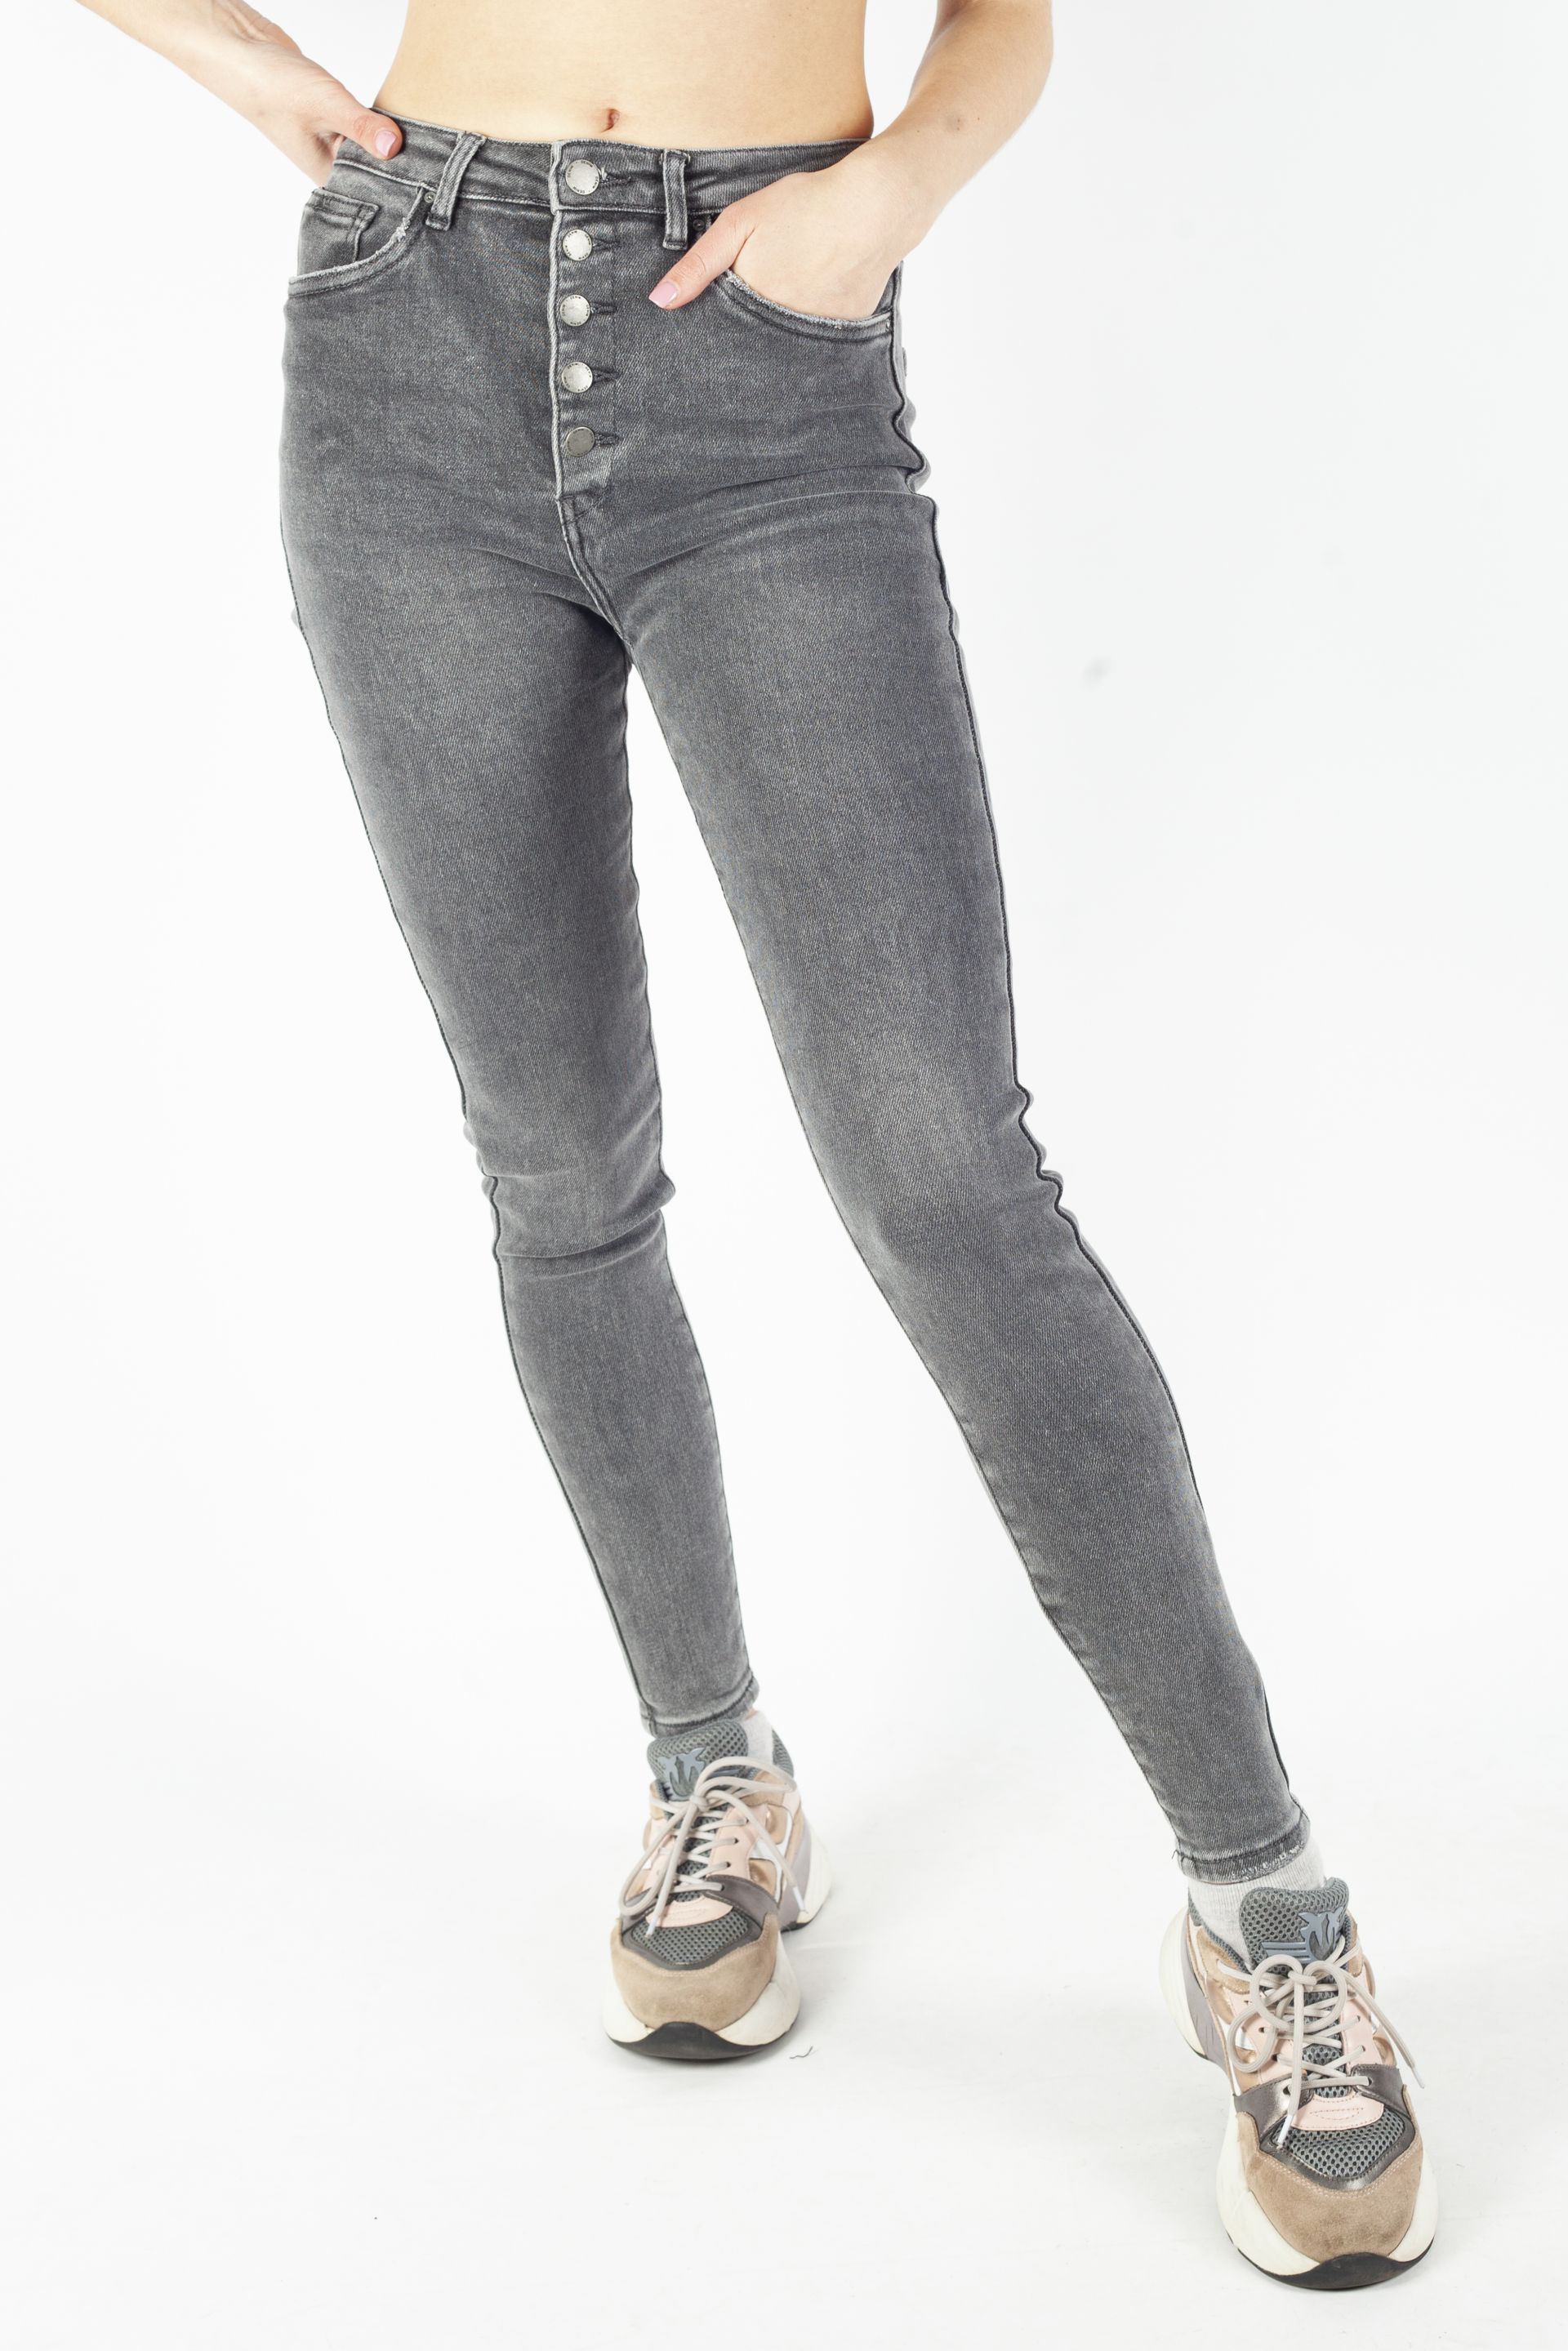 Jeans VS MISS VS7543